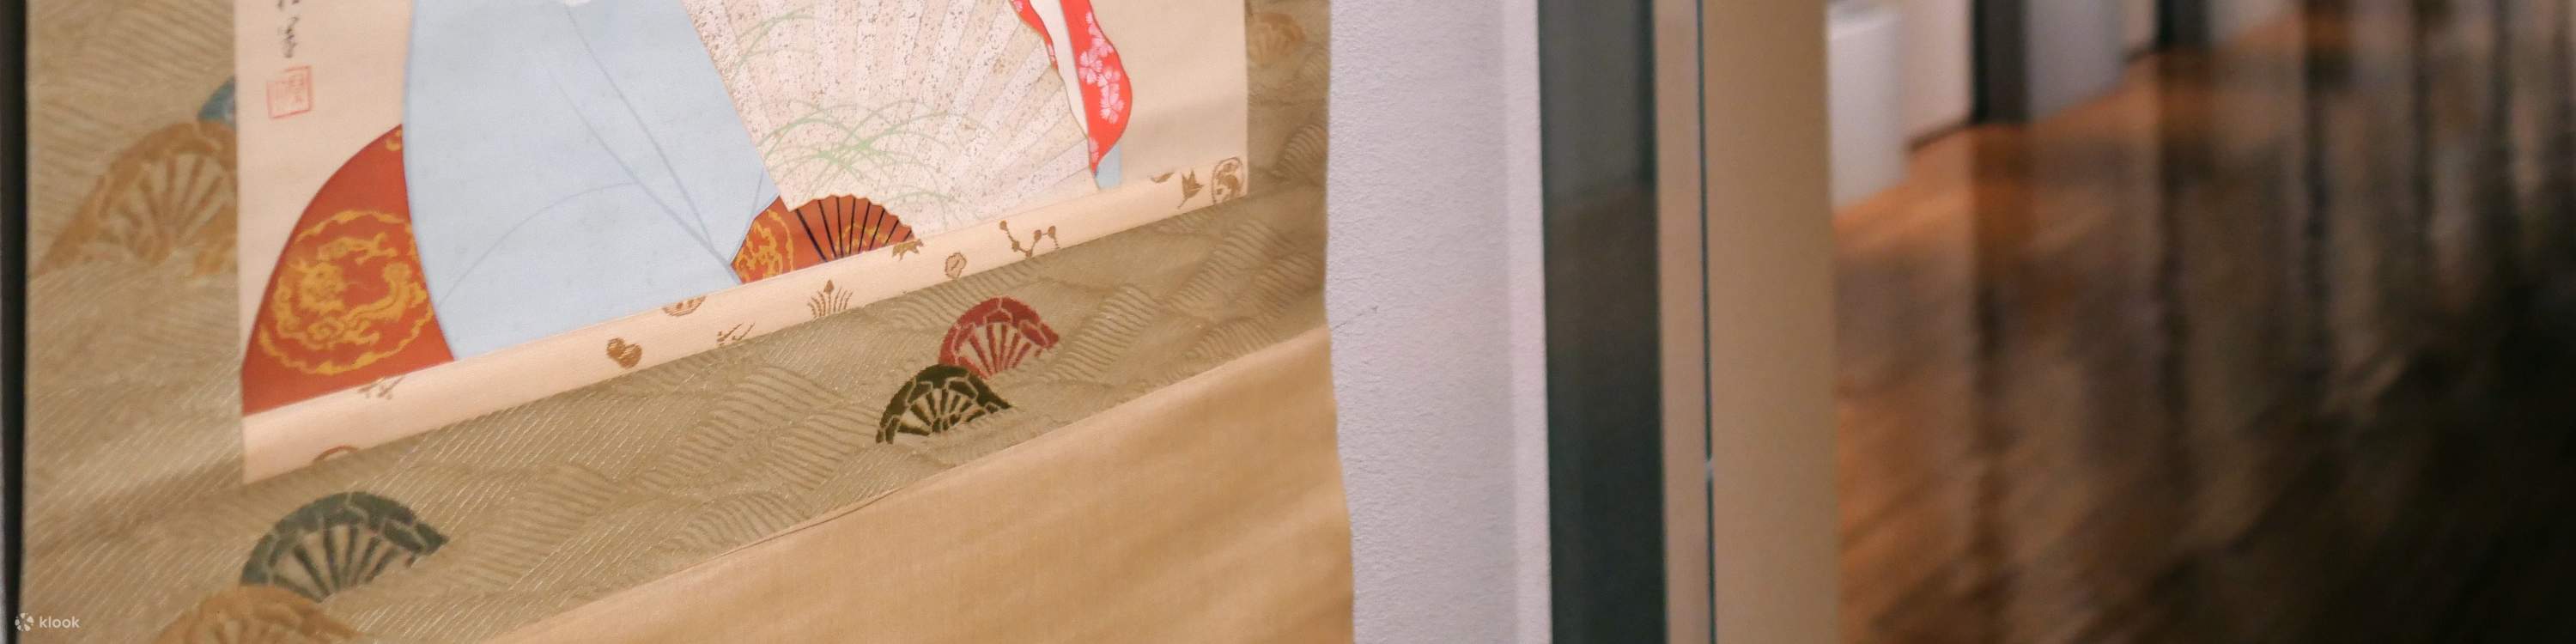 山種美術館 【特別展】世界遺産登録10周年記念 富士と桜 ―北斎の富士